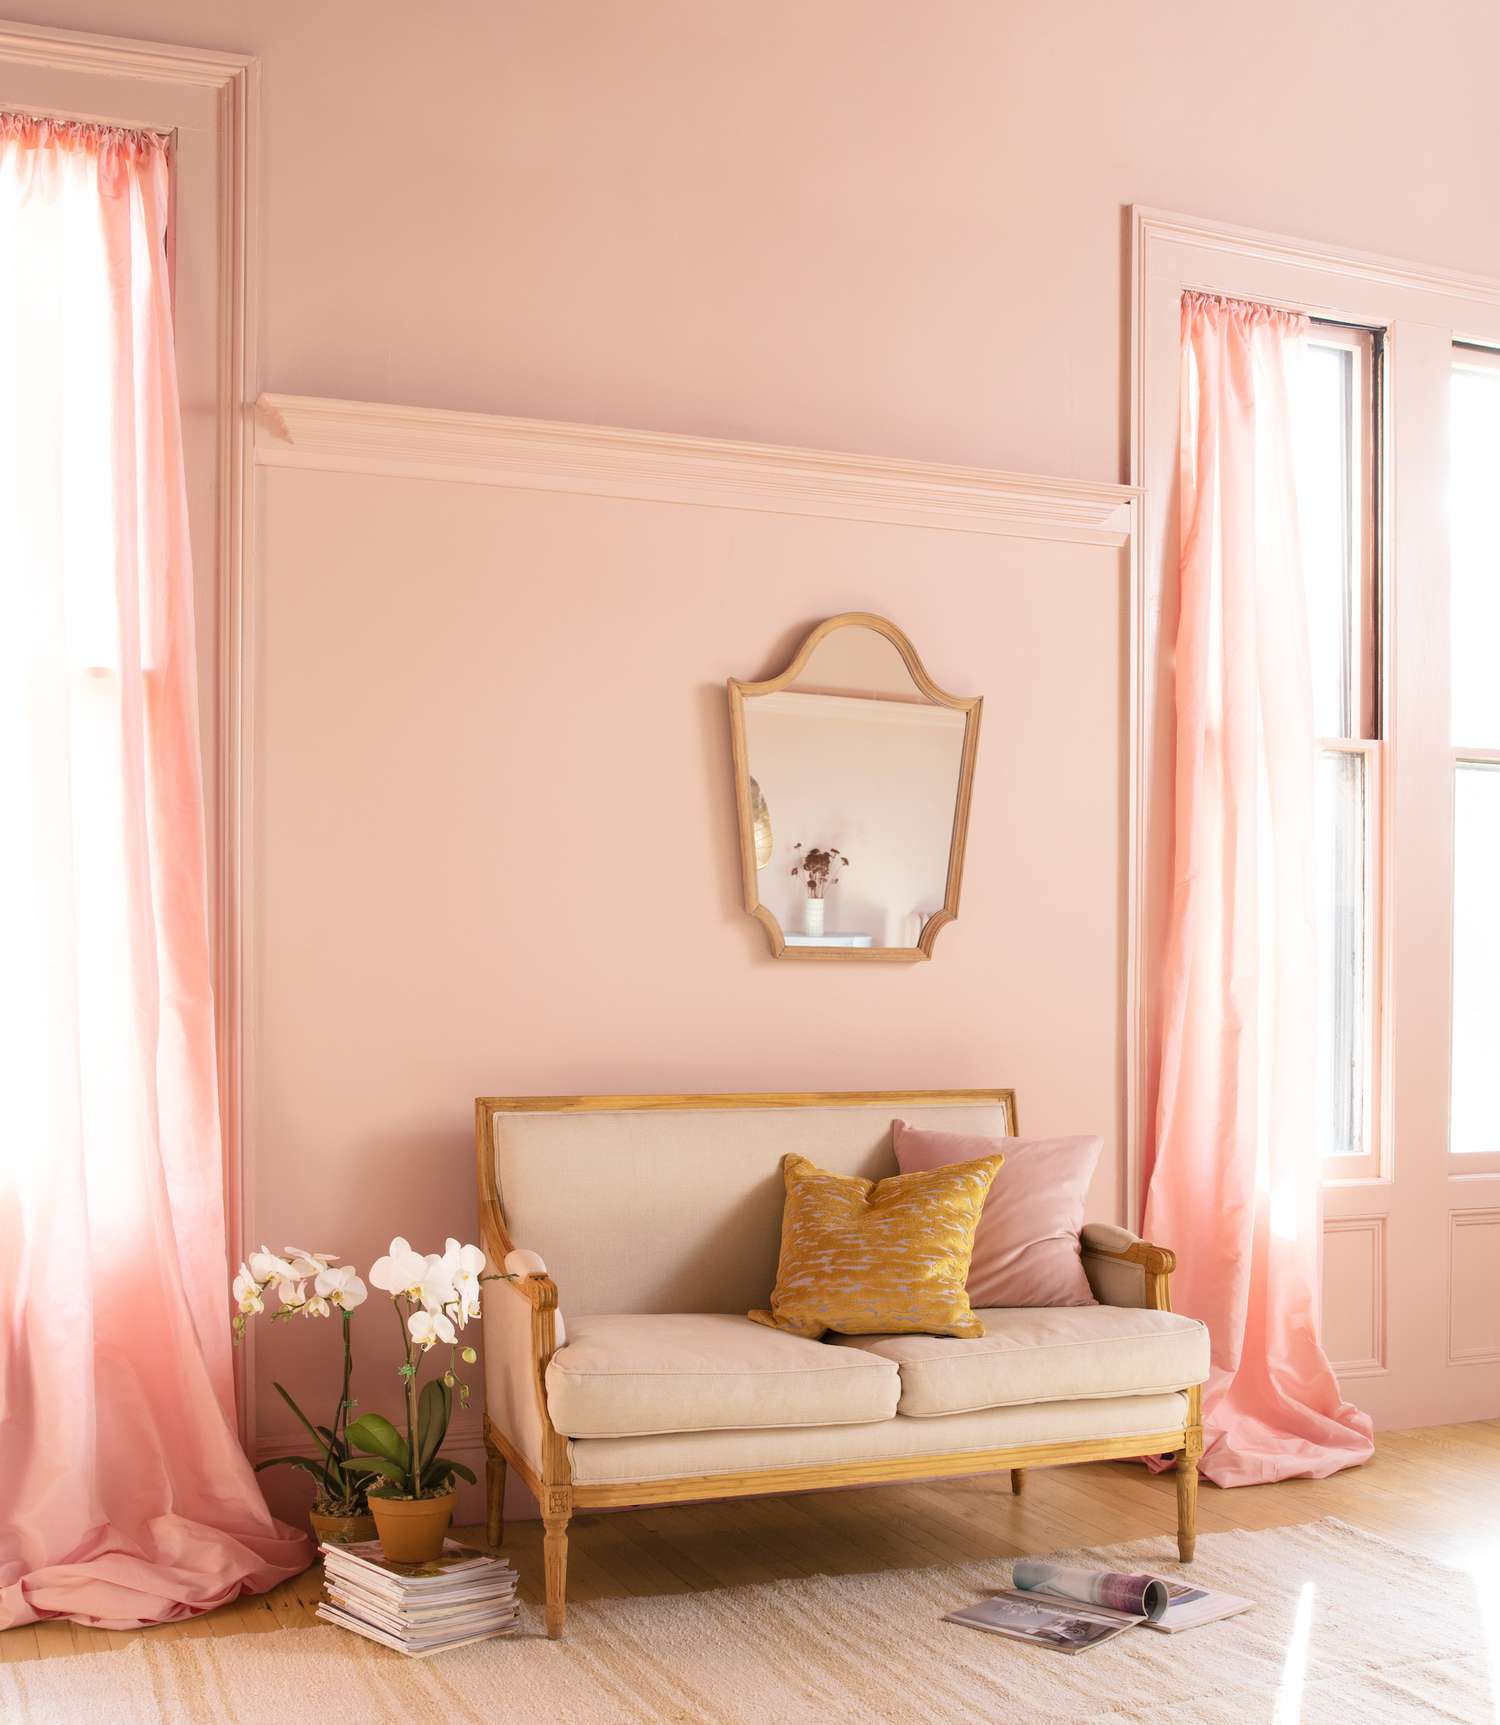 Benjamin Moore's AURA premium paints in einem Wohnzimmer